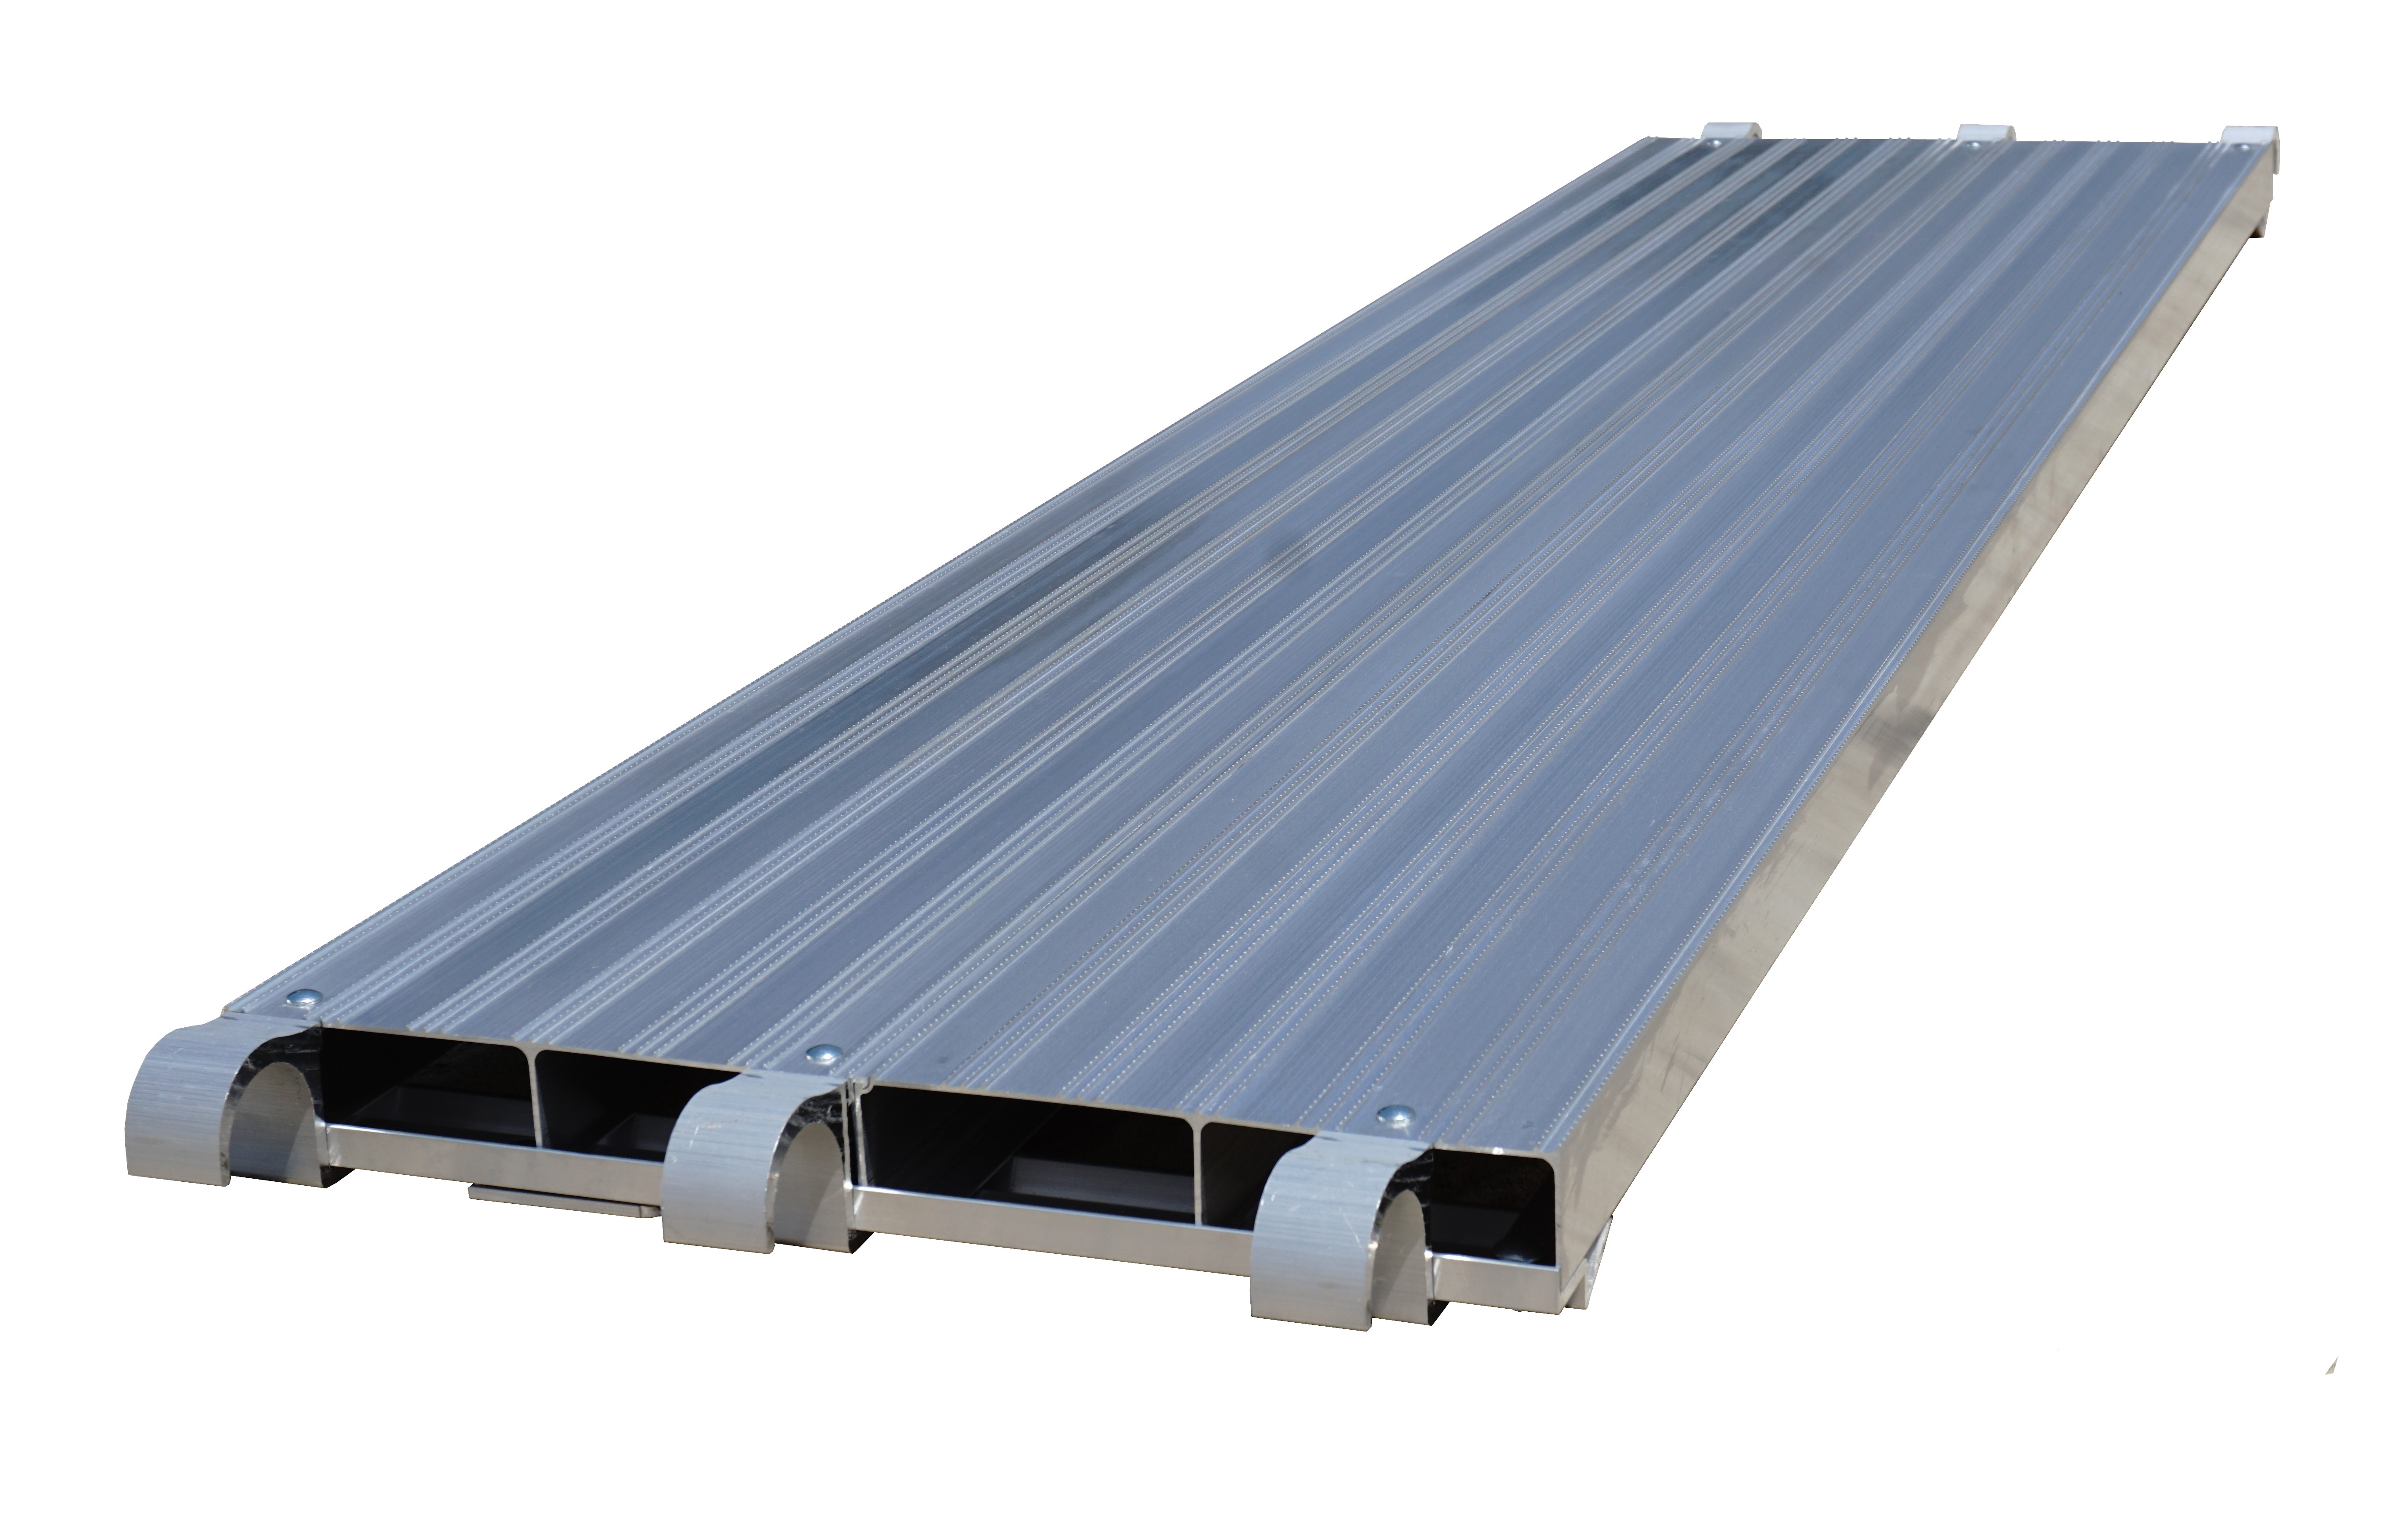 Plank • Construction Equipment All Aluminum Scaffold Deck Walkboard 7 ft 